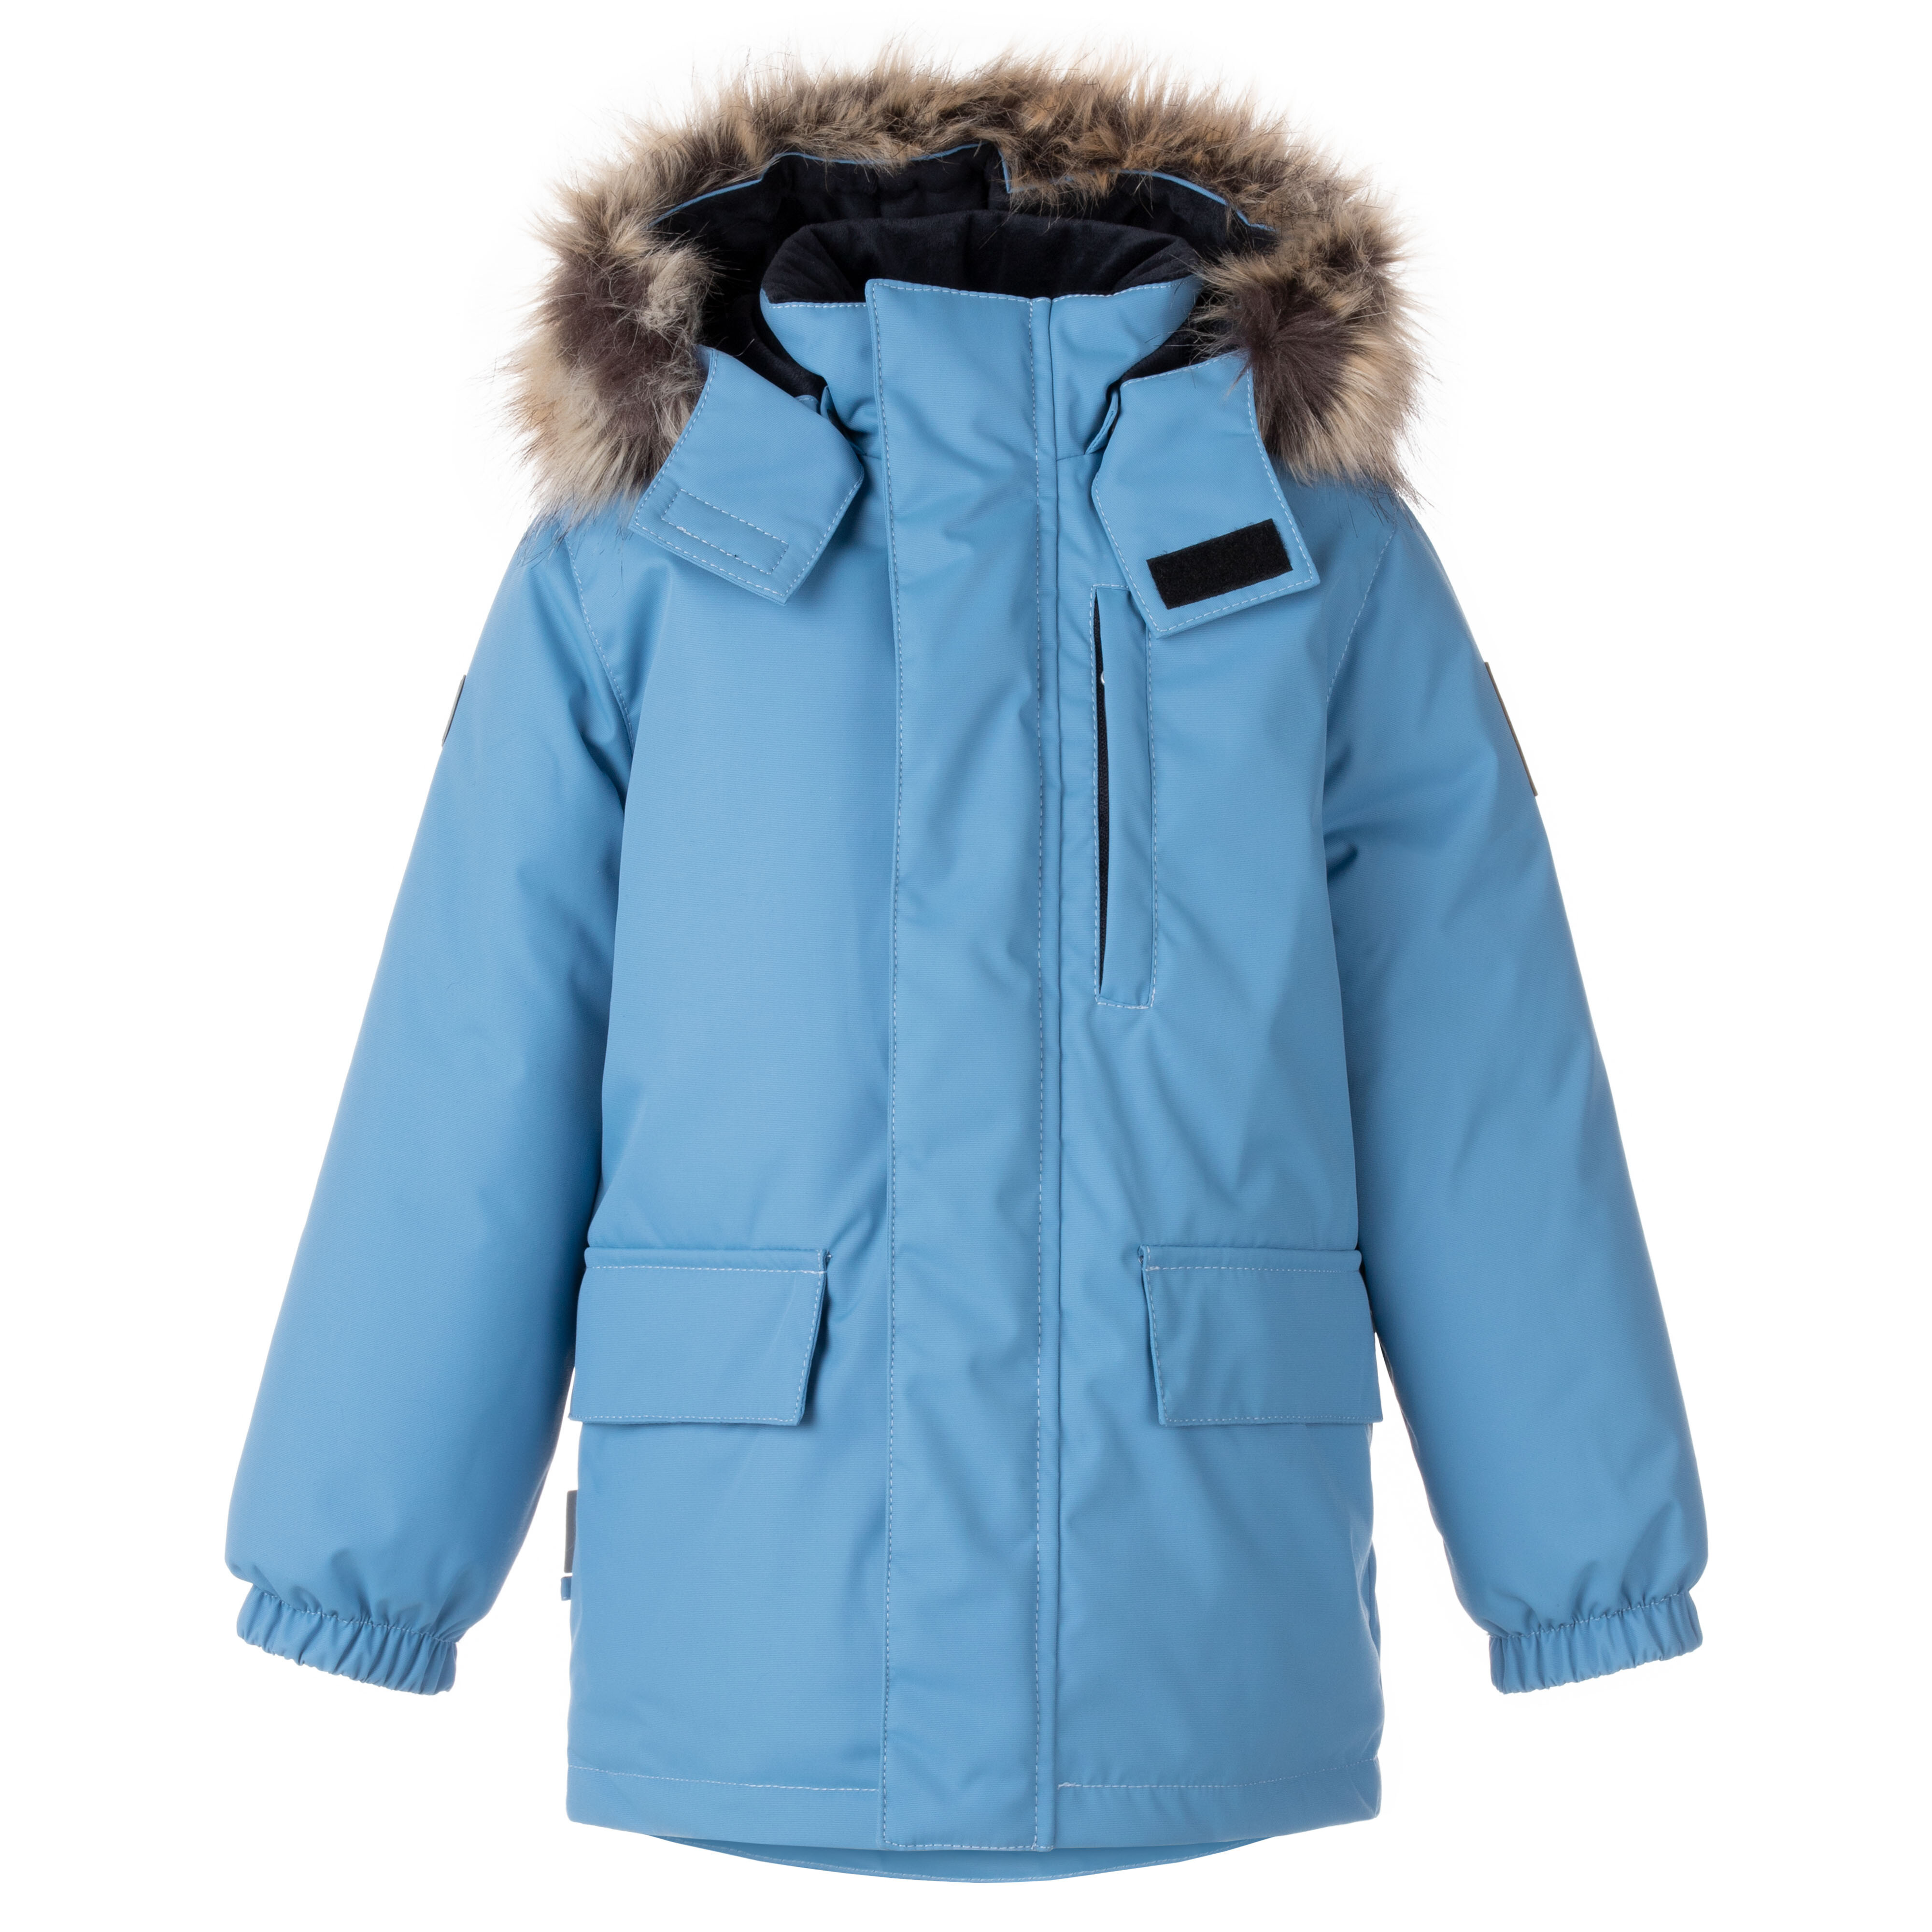 Куртка детская KERRY K22441 цв. голубой р. 116